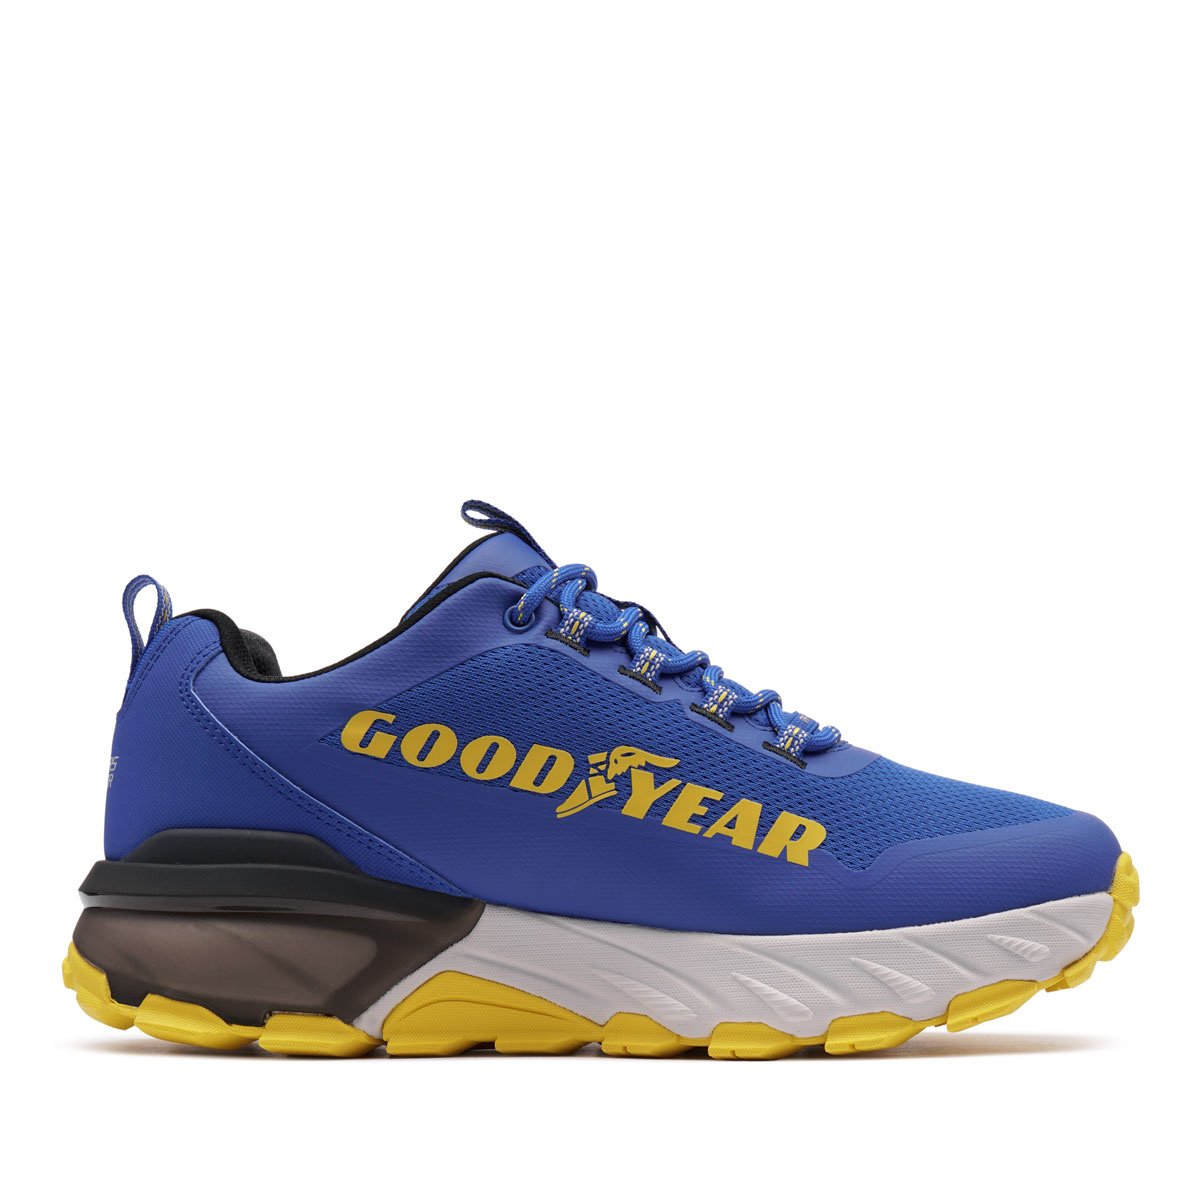 Skechers Max Protect-Fast Track Мъжки спортни обувки 237304-BLYL